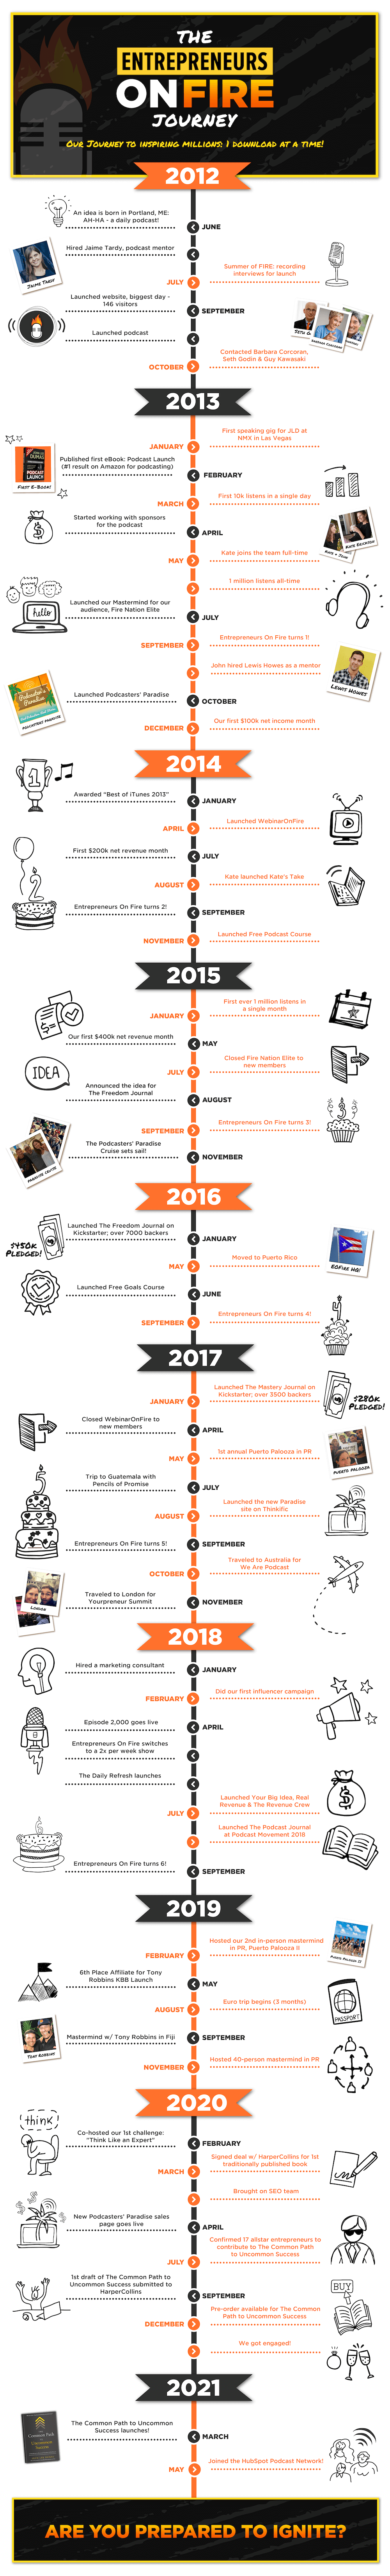 EOF-Timeline_2021_sm